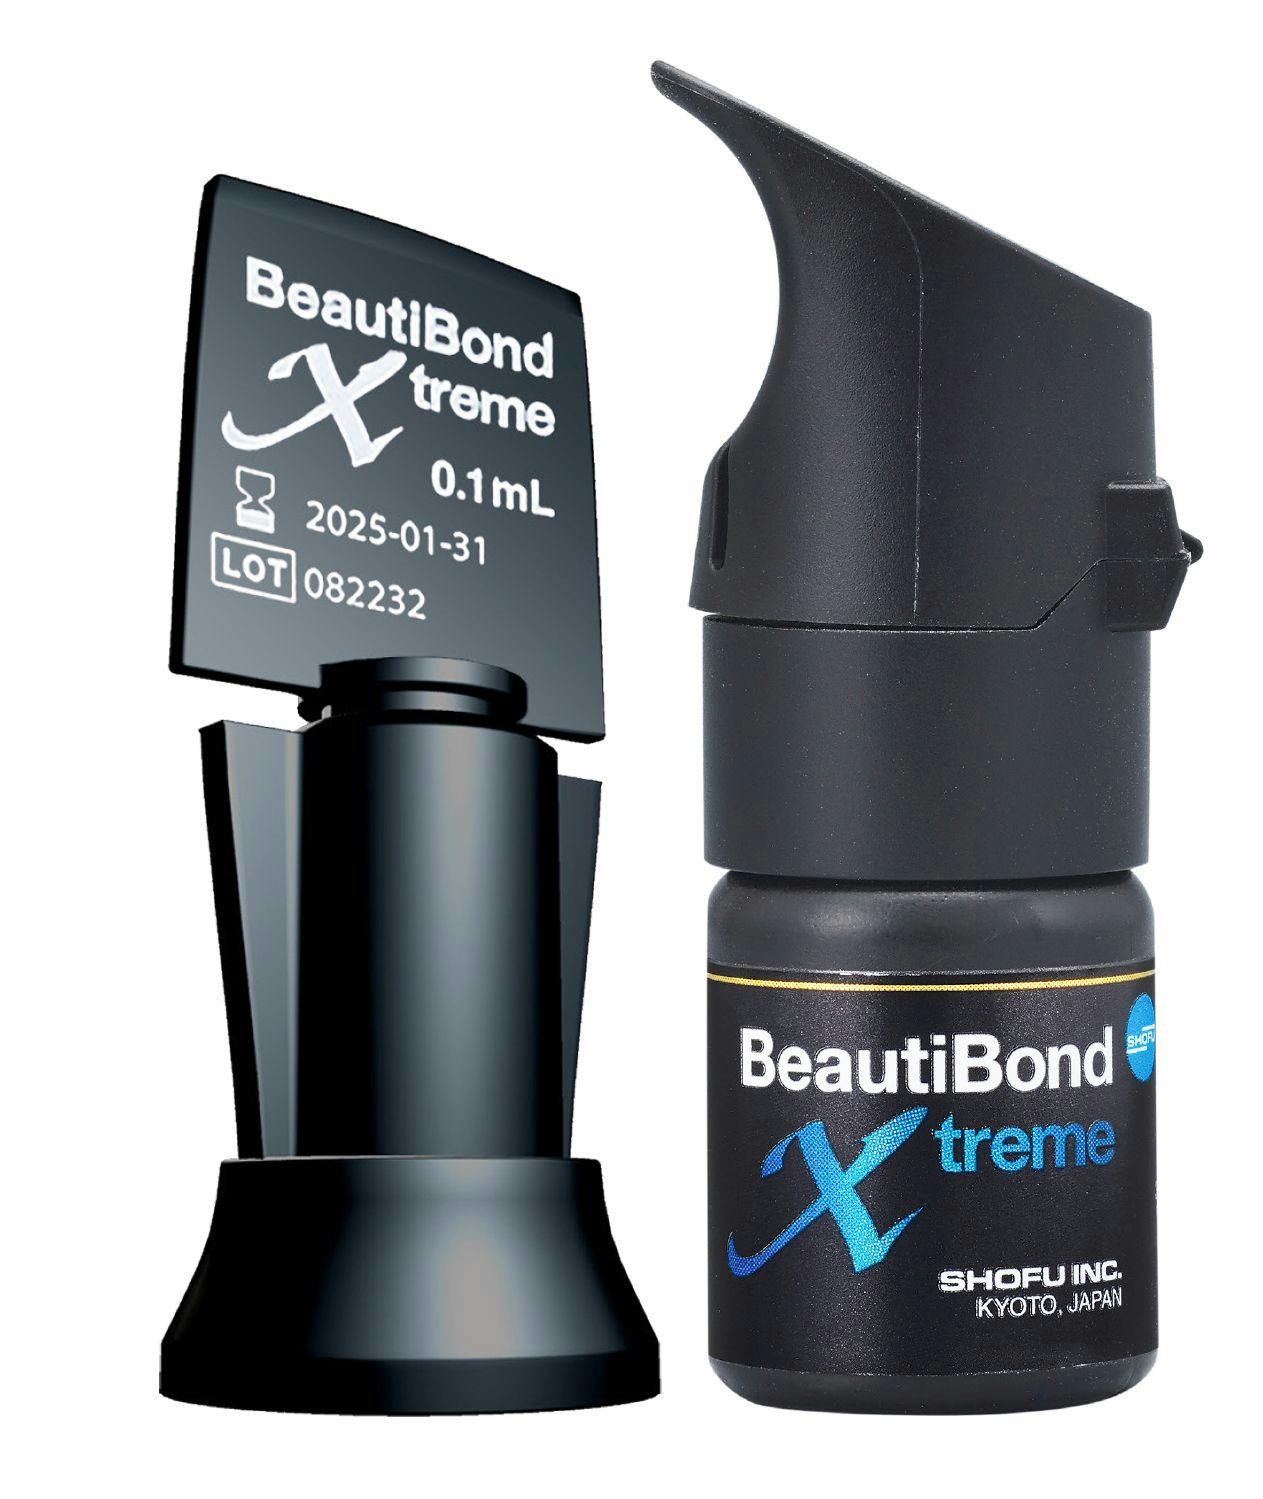 Shofu Dental Unveils BeautiBond Xtreme Universal Bonding Agent Featuring Quad-Adhesive Technology | Image Credit: © Shofu Dental Corporation